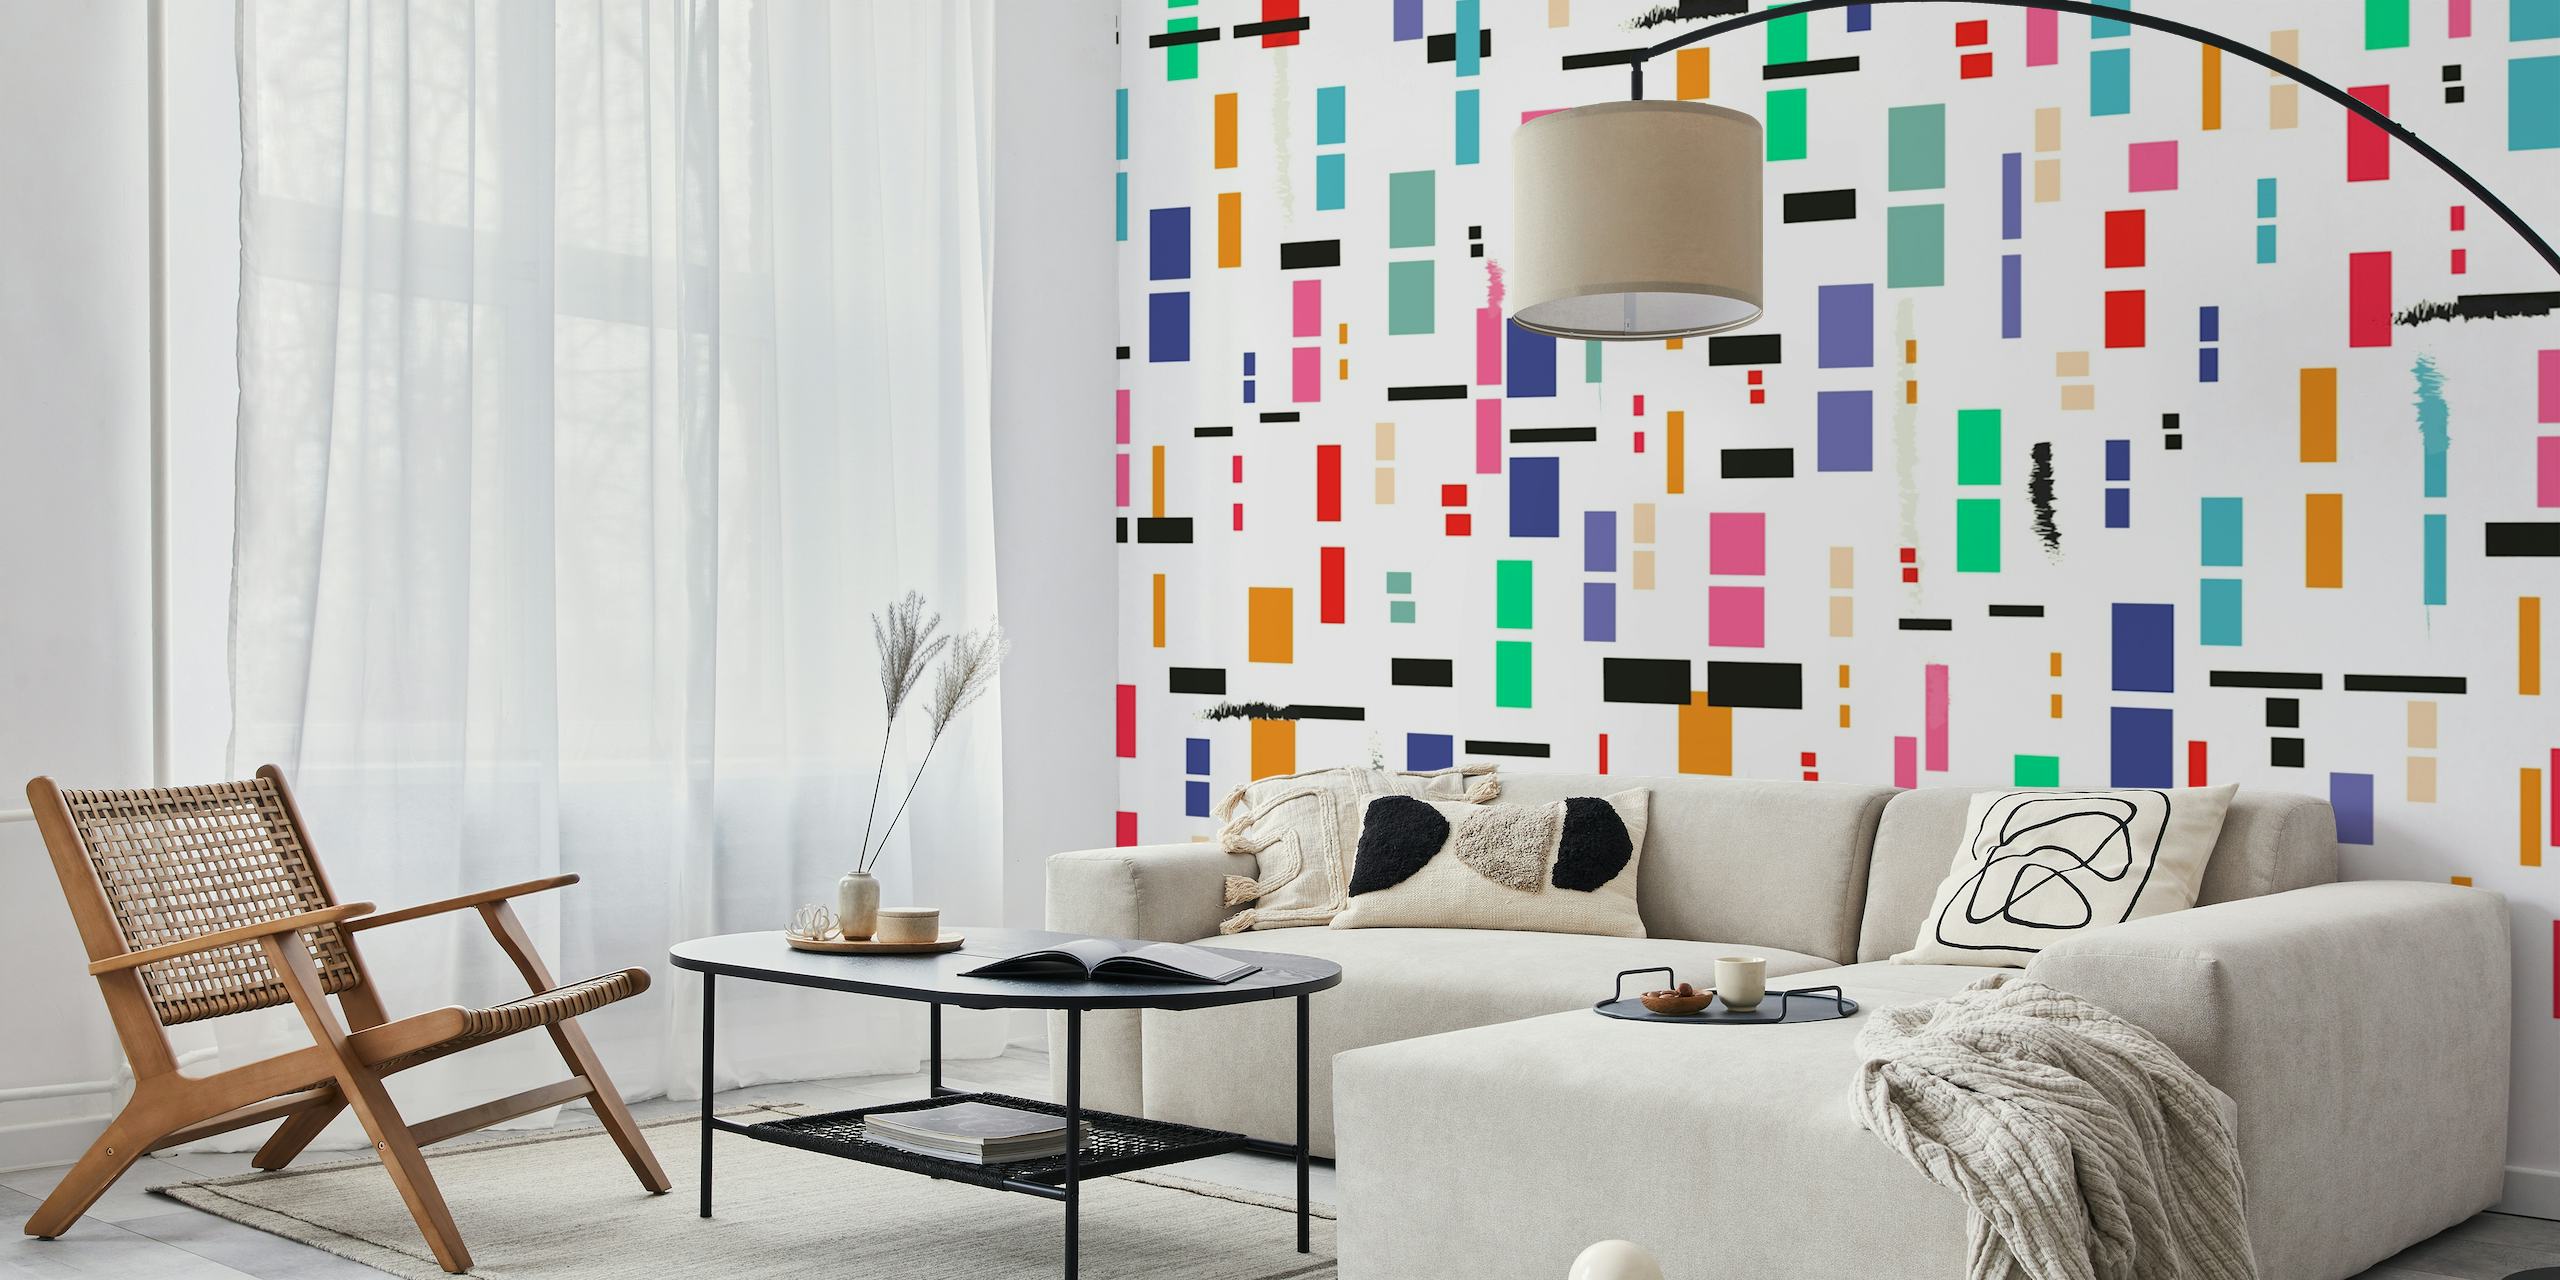 Zidna slika u obliku blokova apstraktne boje s različitim oblicima pravokutnika u raznim bojama